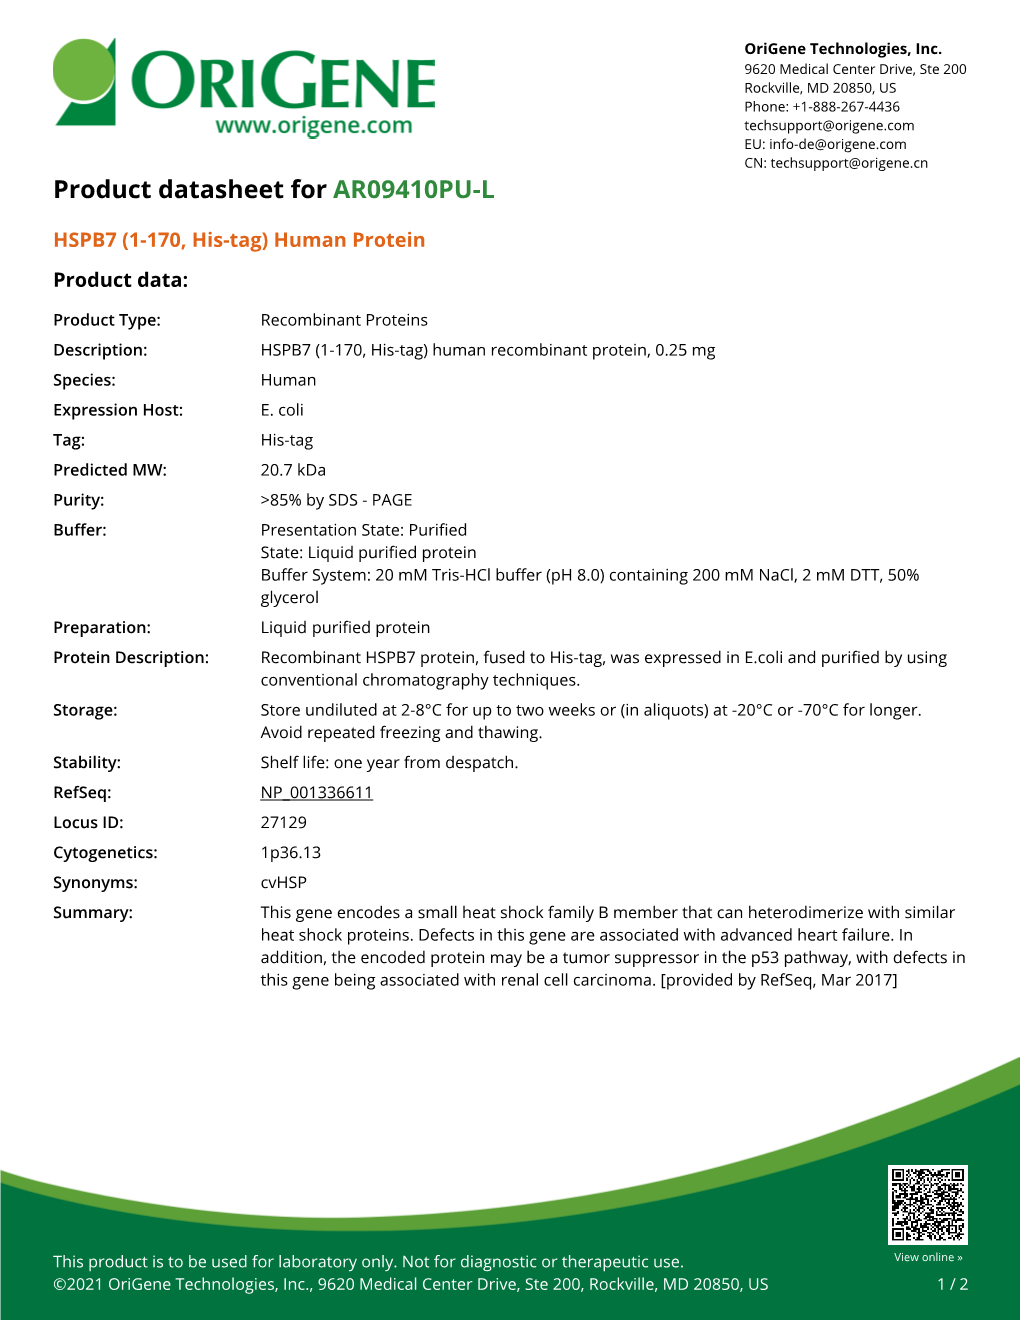 HSPB7 (1-170, His-Tag) Human Protein – AR09410PU-L | Origene